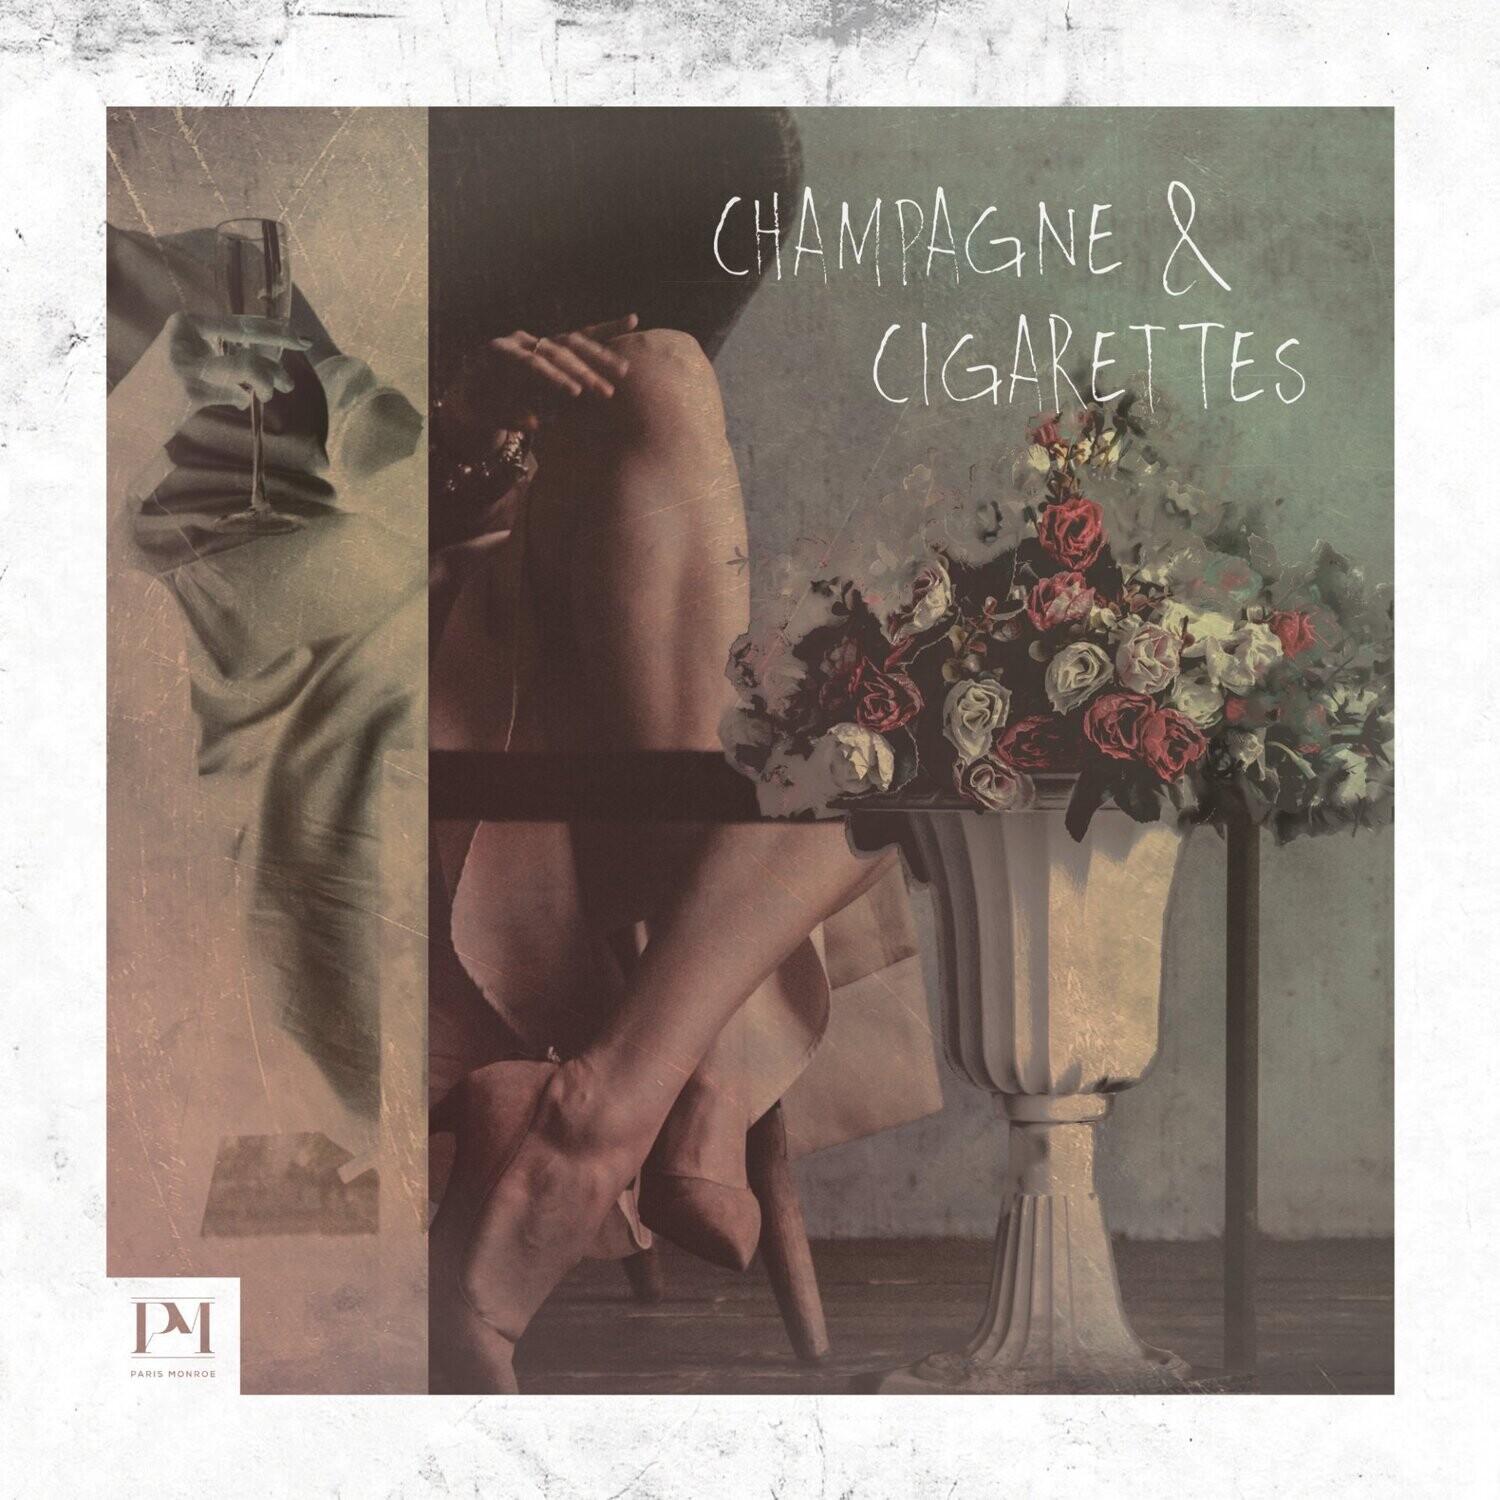 Paris Monroe, Champagne & Cigarettes EP